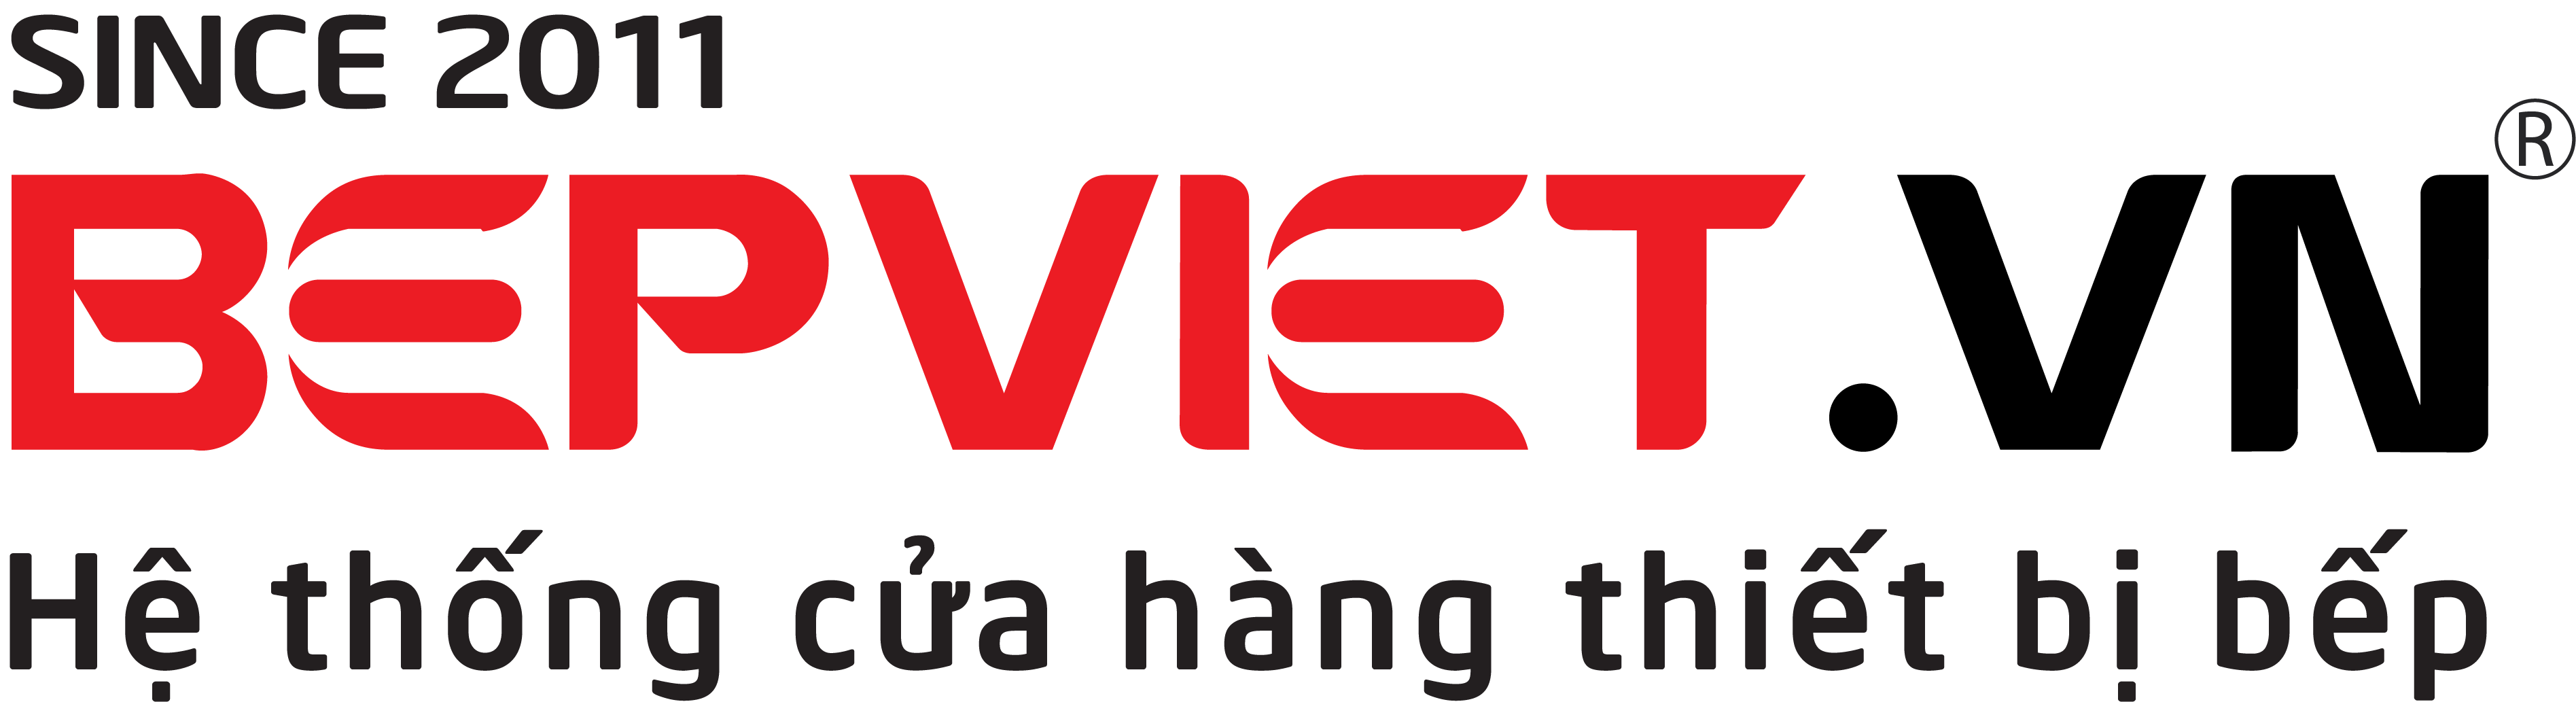 Bepviet.vn và thương hiệu Dann tham dự Triển lãm Quốc tế VIETBUILD 2023 - Tháng 8 tại Quận 12 - TP.HCM